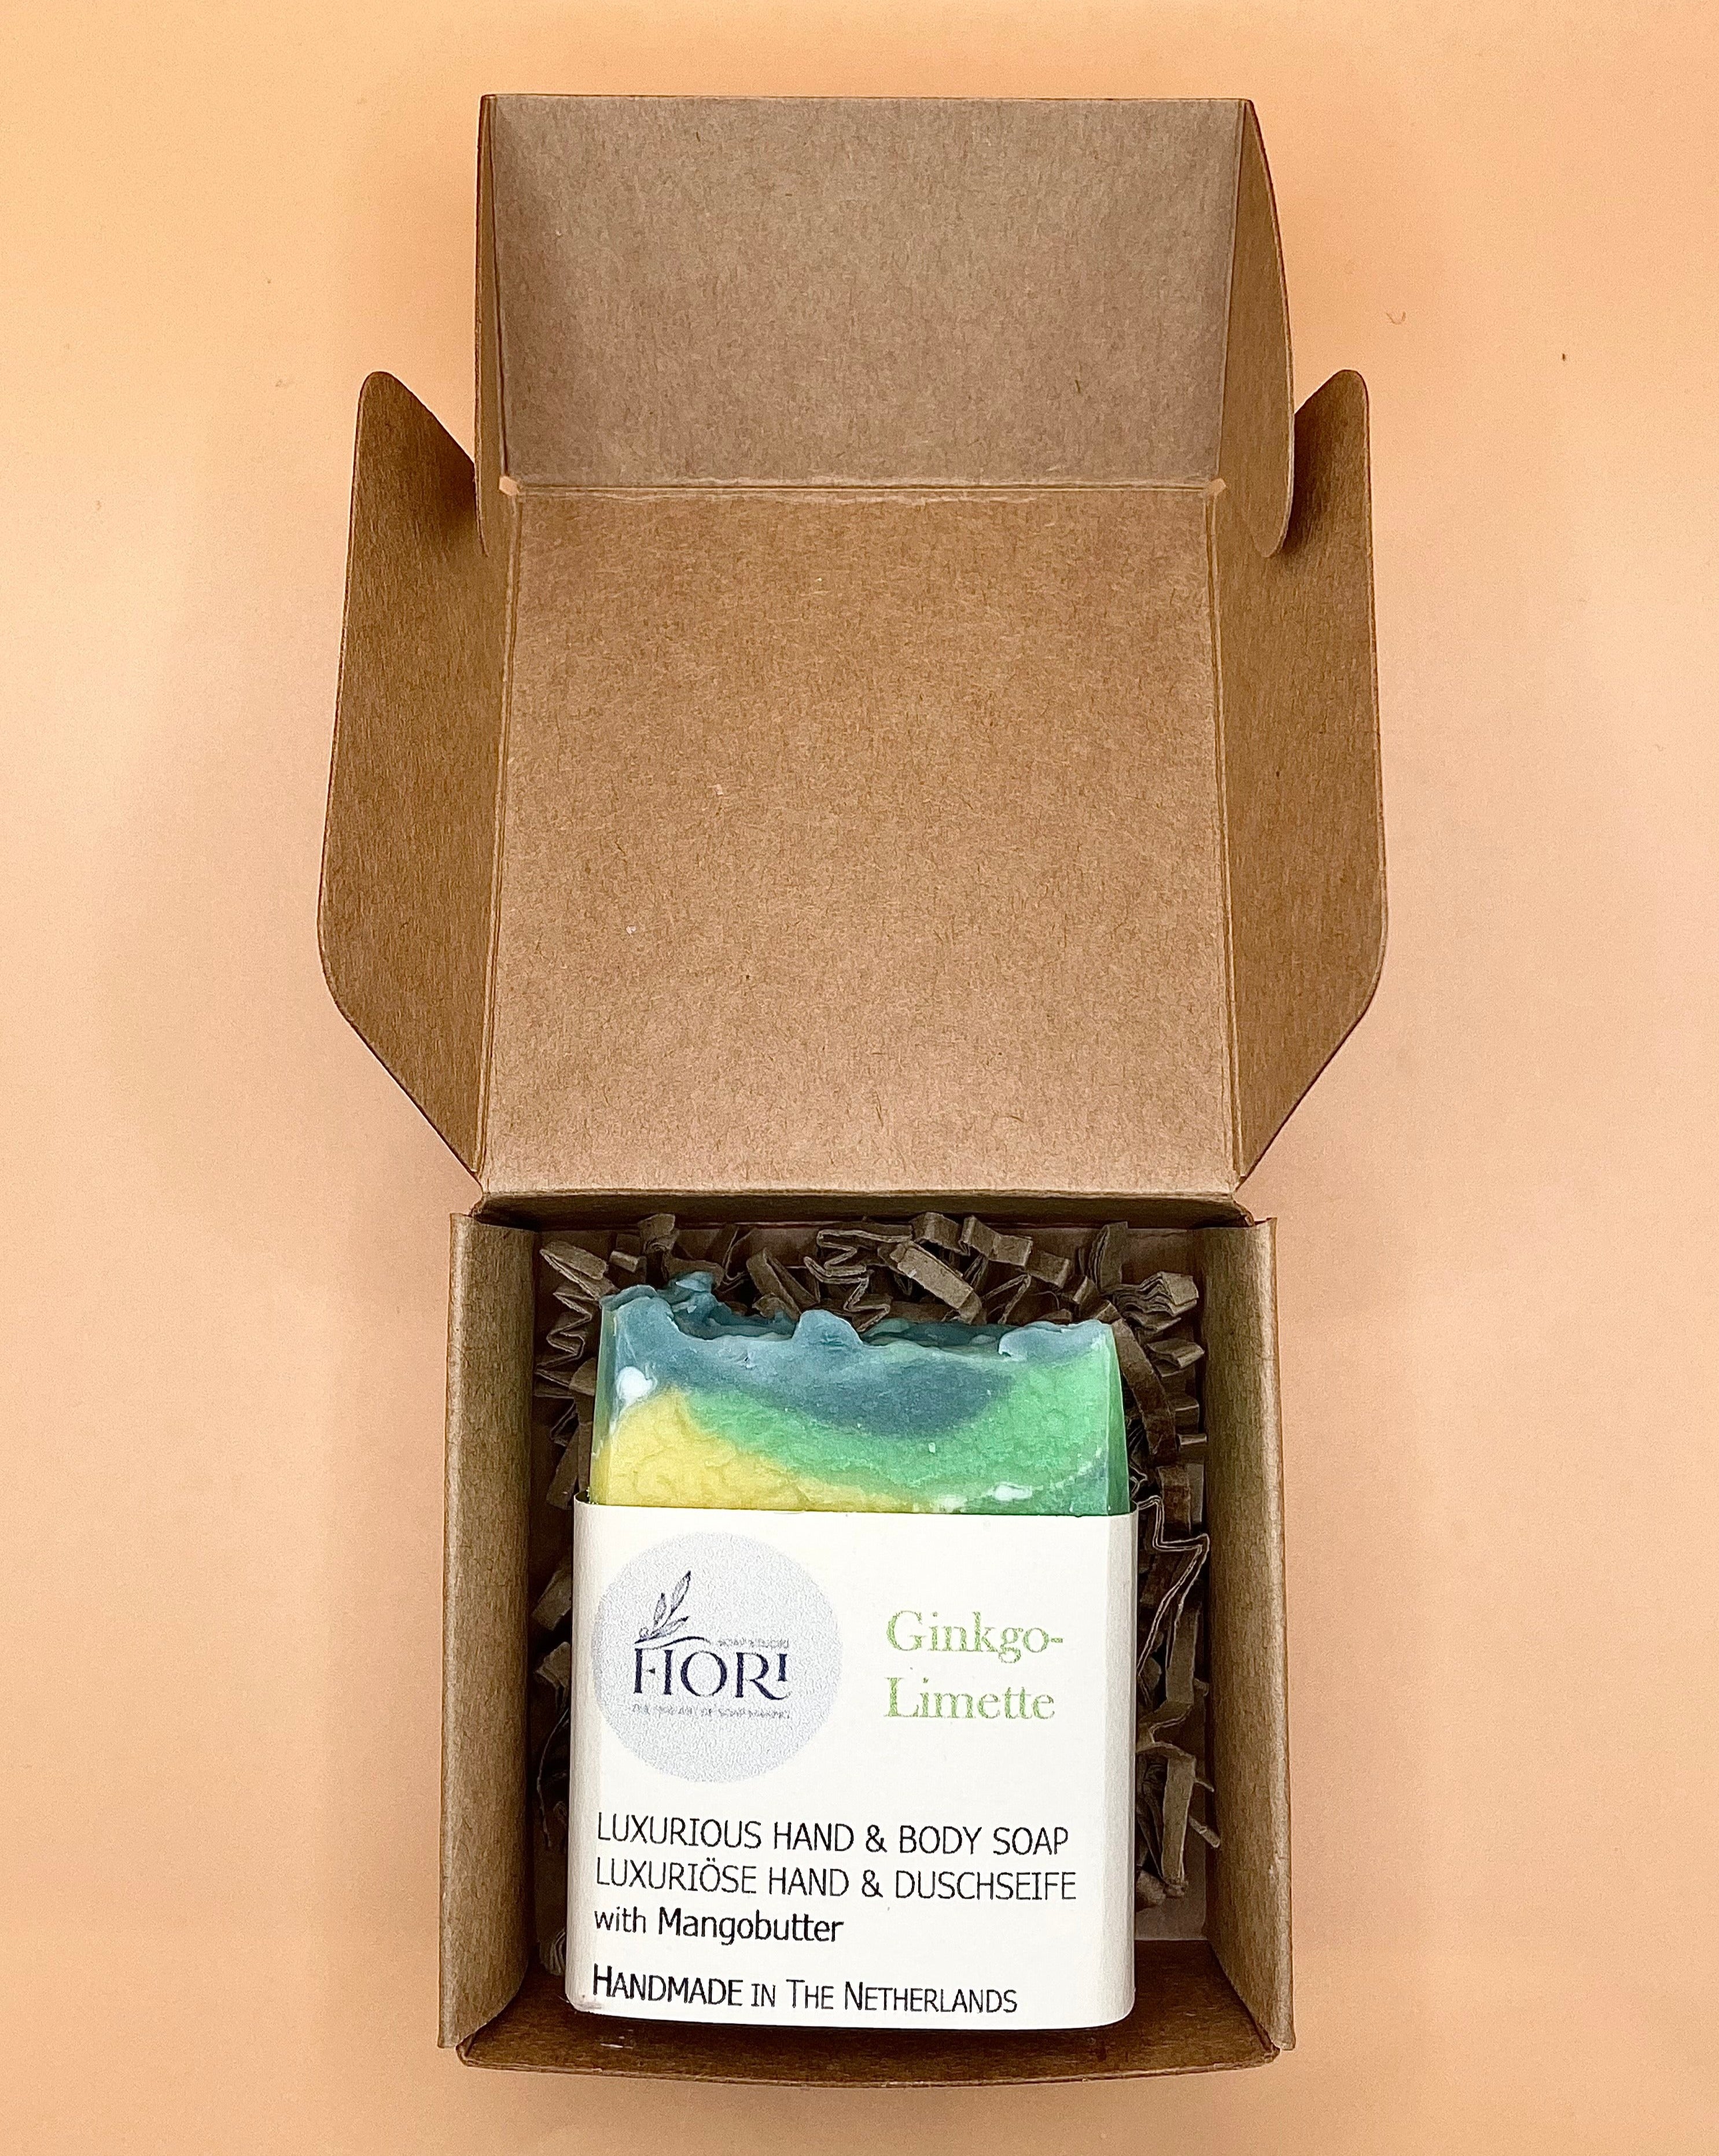 Ginkgo-Limette Soap packaged in Kraft paper box